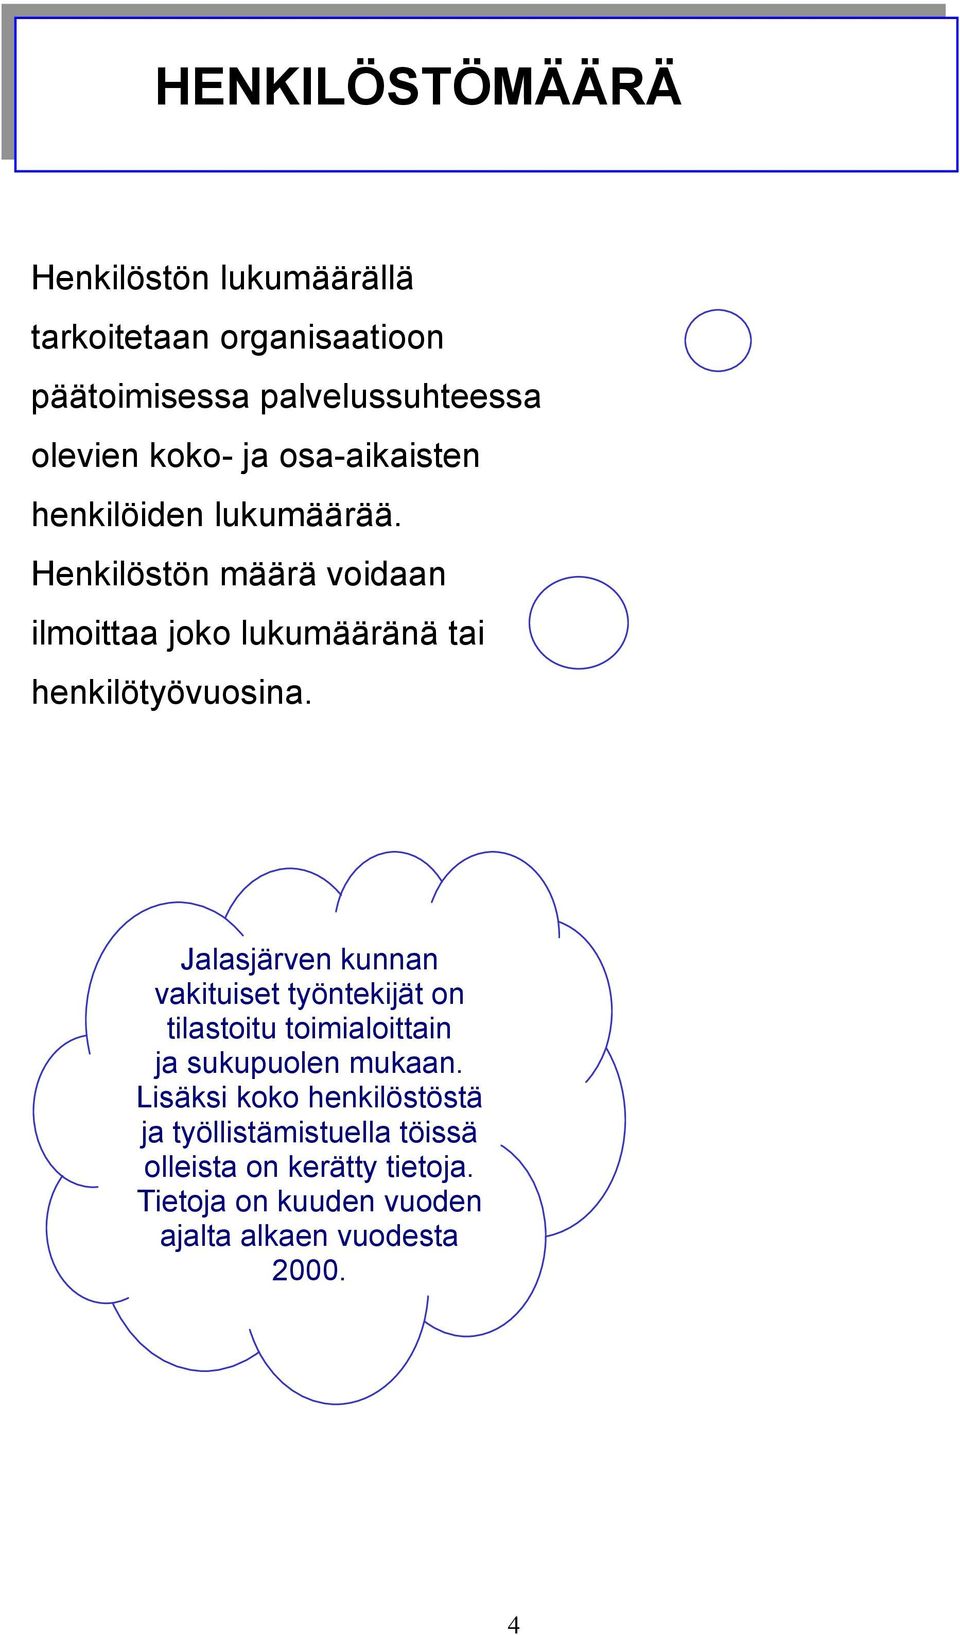 Jalasjärven kunnan vakituiset työntekijät on tilastoitu toimialoittain ja sukupuolen mukaan.